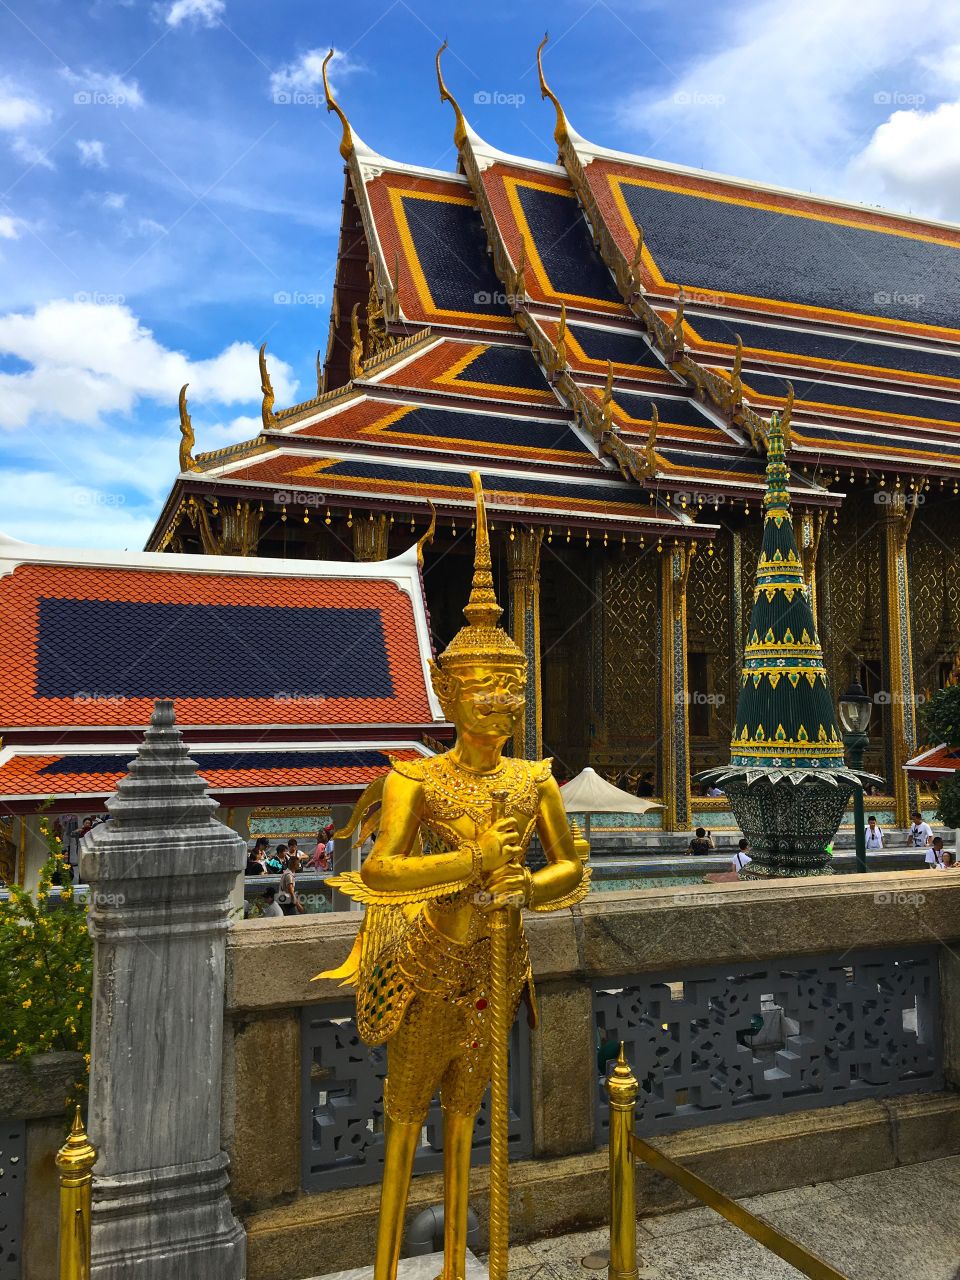 Grand Palace / Bangkok Thailand 41